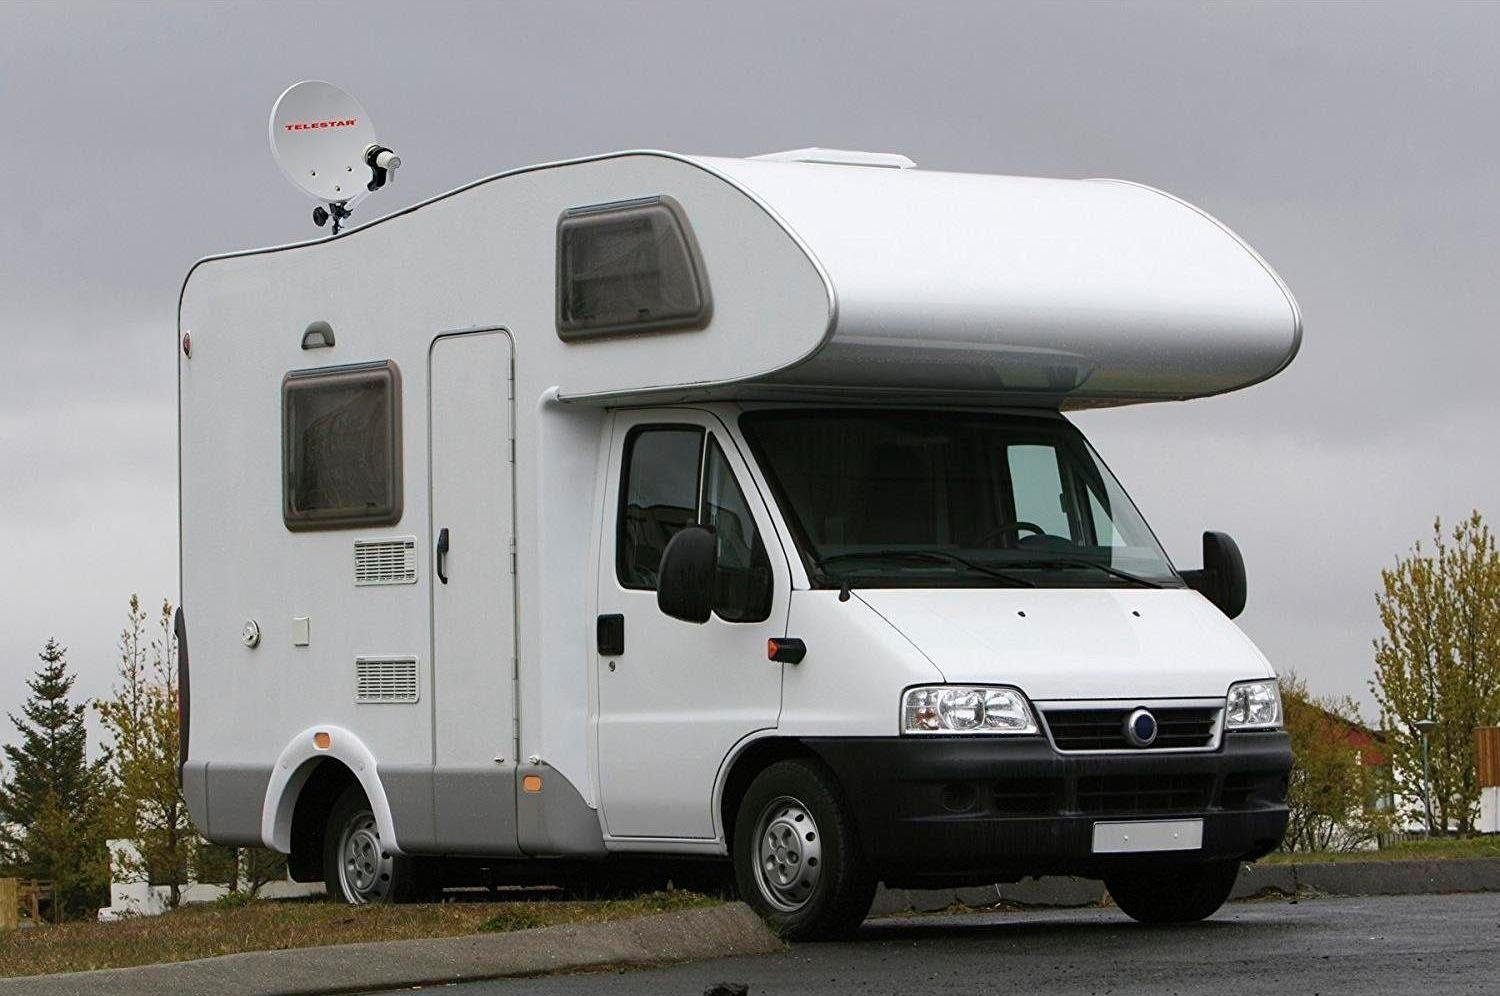 Camping Sat-Anlage Koffer im Sat-Anlage (DVB-S, Außenbereich) für Camping TELESTAR